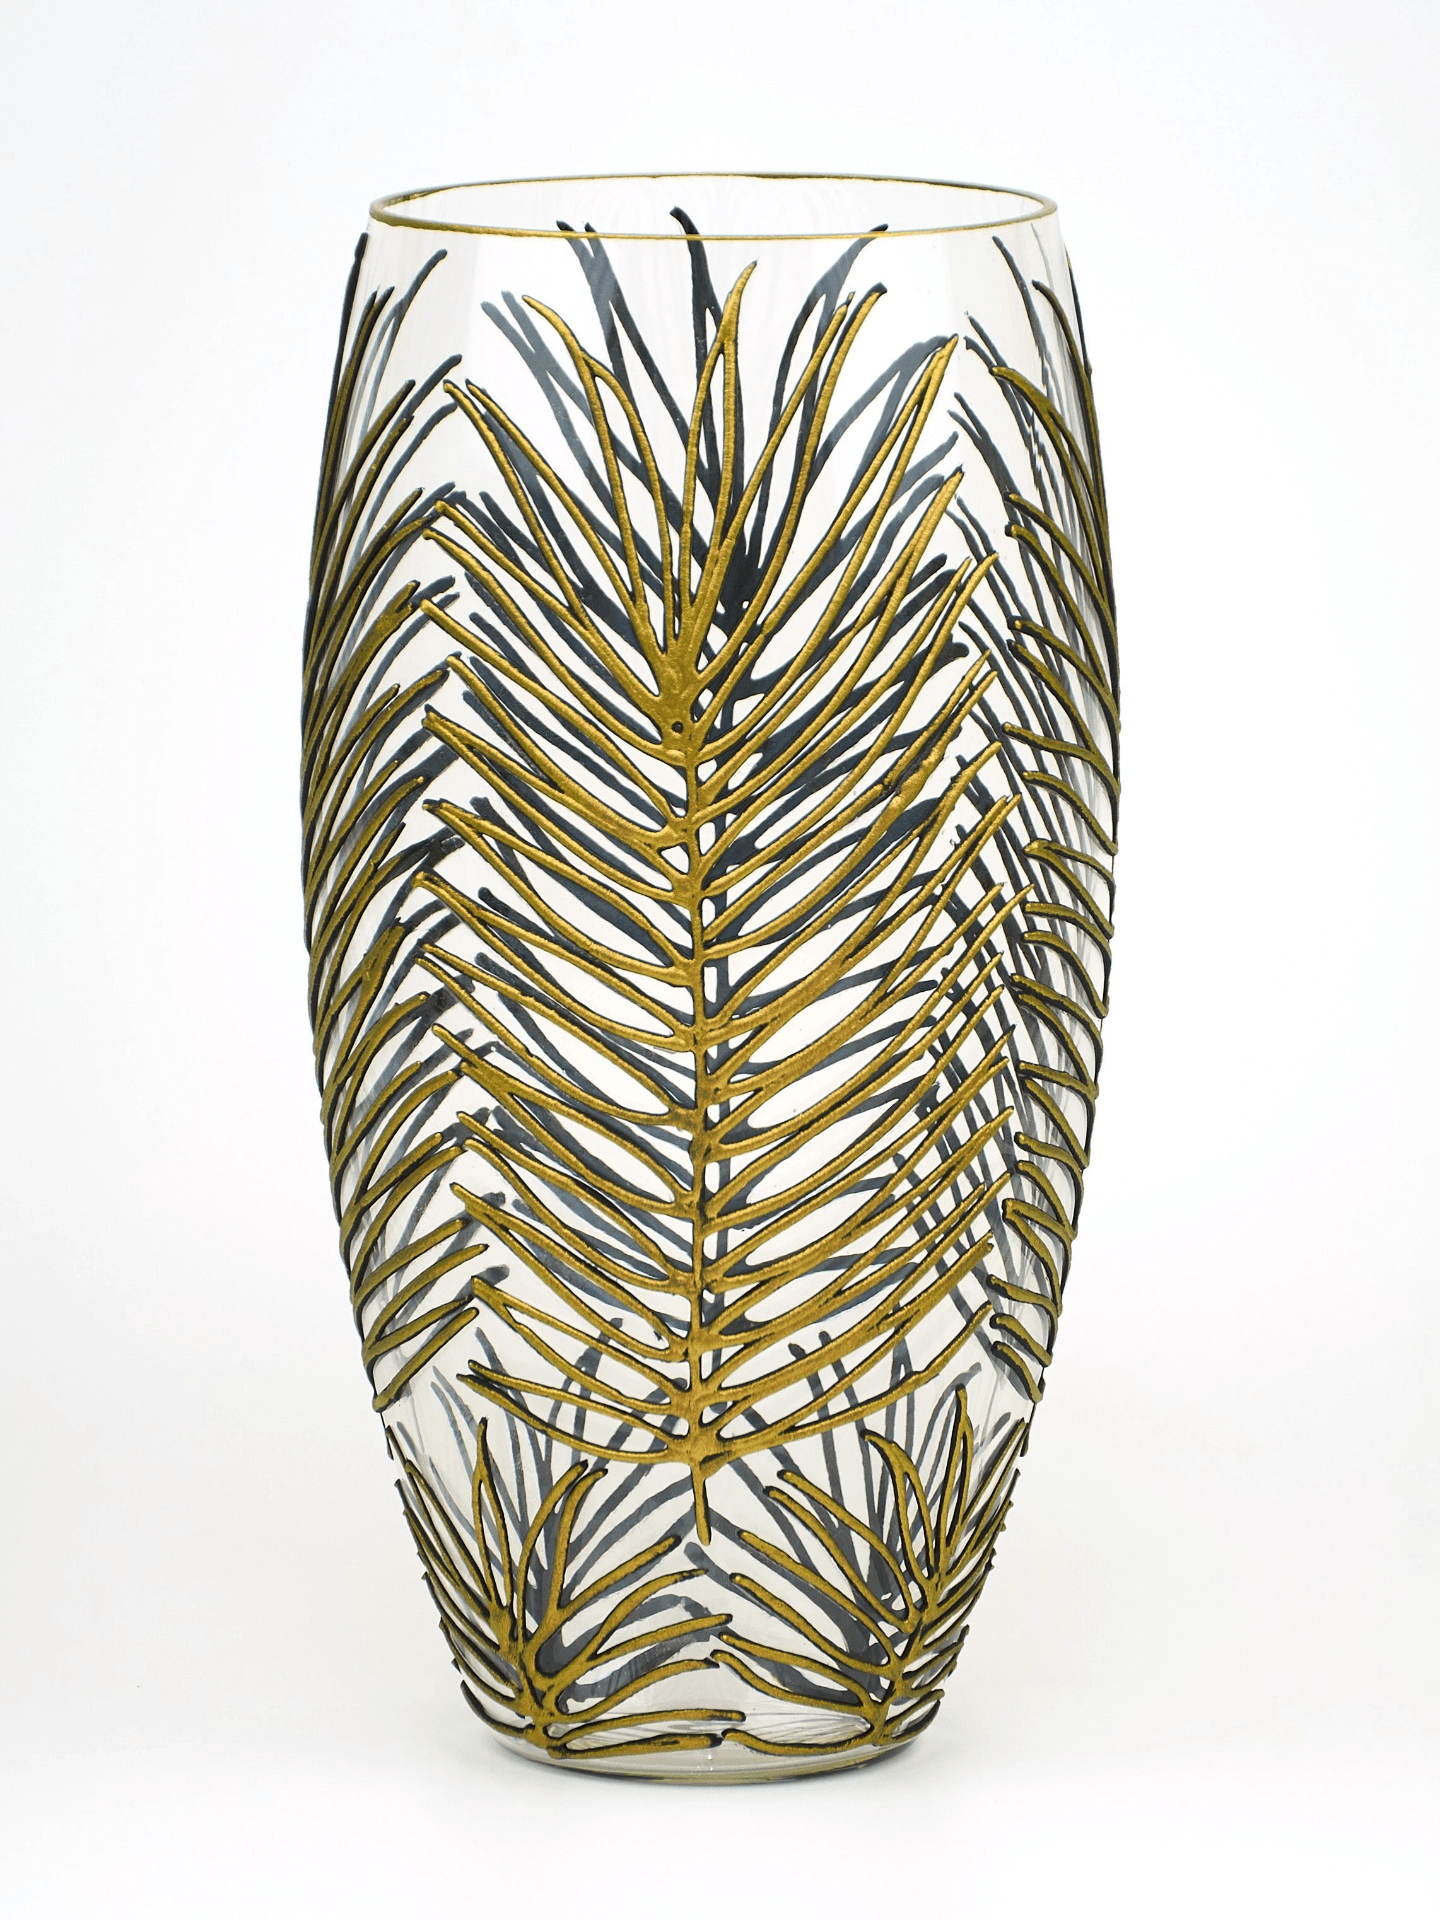 Handpainted Glass Vase for Flowers | Art Tropical Oval Vase | Interior Design Home Room Decor | 7518/300/sh142  